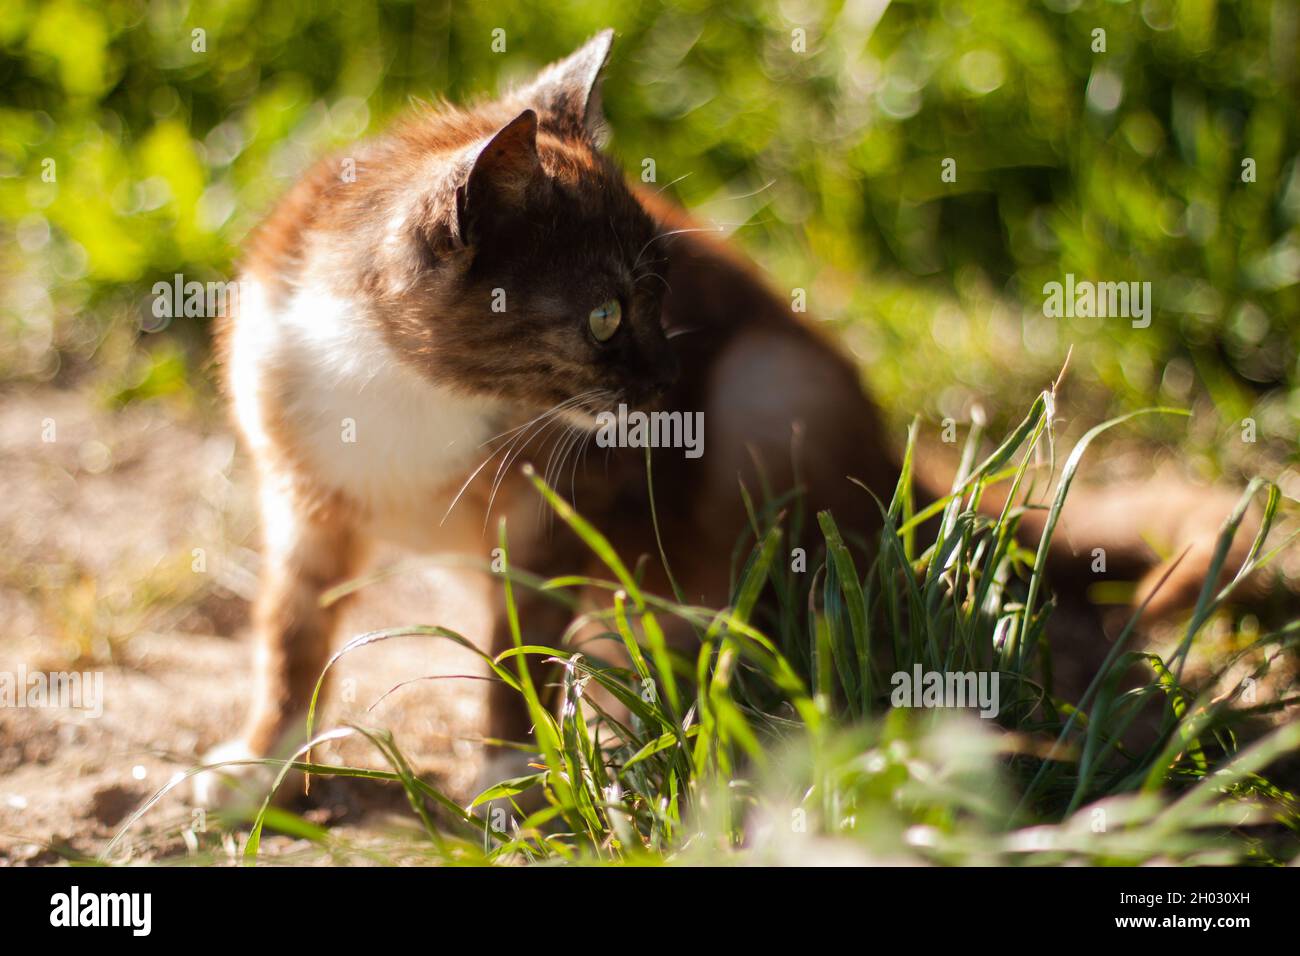 Junge Katze, die im Gras im hellen Sonnenlicht sitzt | Vorderansicht einer braun-weißen Katze, die auf dem Boden sitzt und an einem sonnigen Tag im Sommer zur Seite schaut Stockfoto